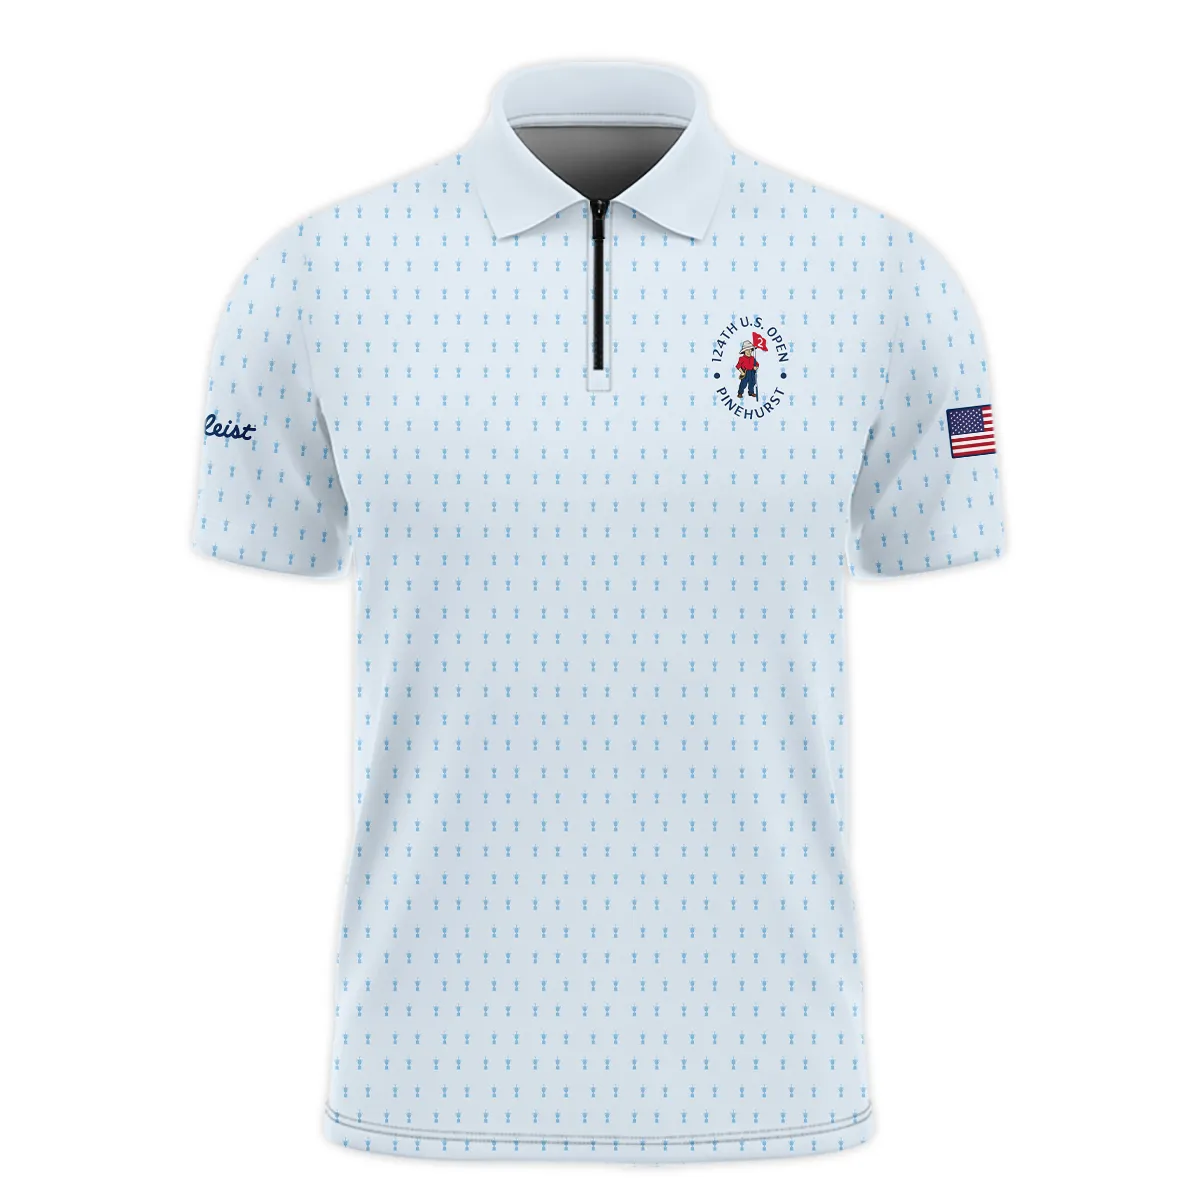 Golf Pattern Light Blue Cup 124th U.S. Open Pinehurst Titleist Zipper Polo Shirt Style Classic